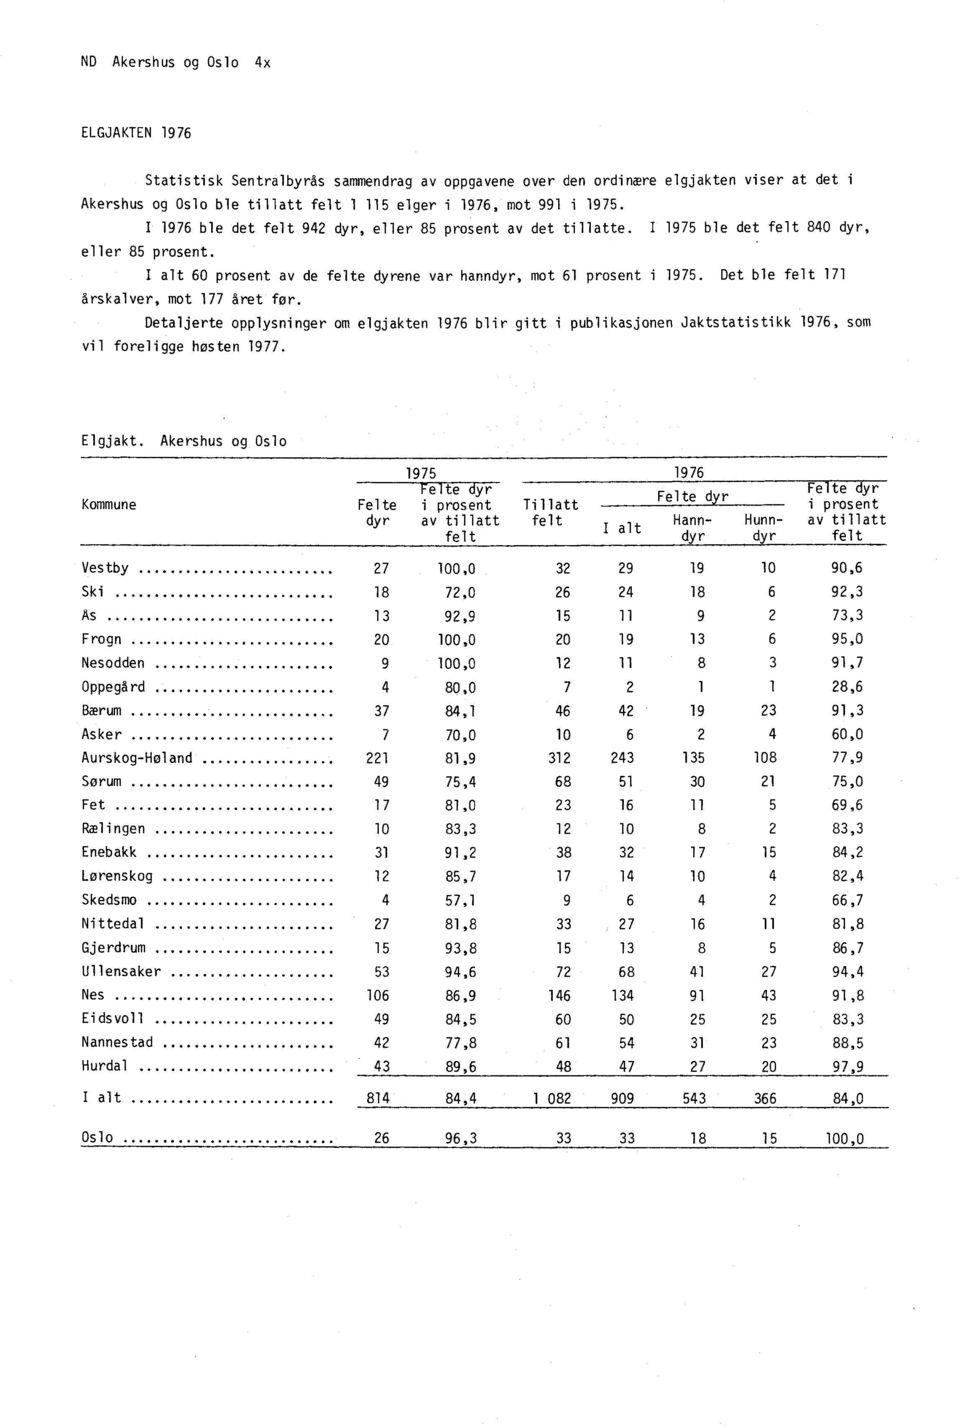 Det ble felt 171 årskalver, mot 177 året for. Detaljerte opplysninger om elgjakten 1976 blir gitt i publikasjonen Jaktstatistikk 1976, som vil foreligge hosten 1977. Elgjakt.